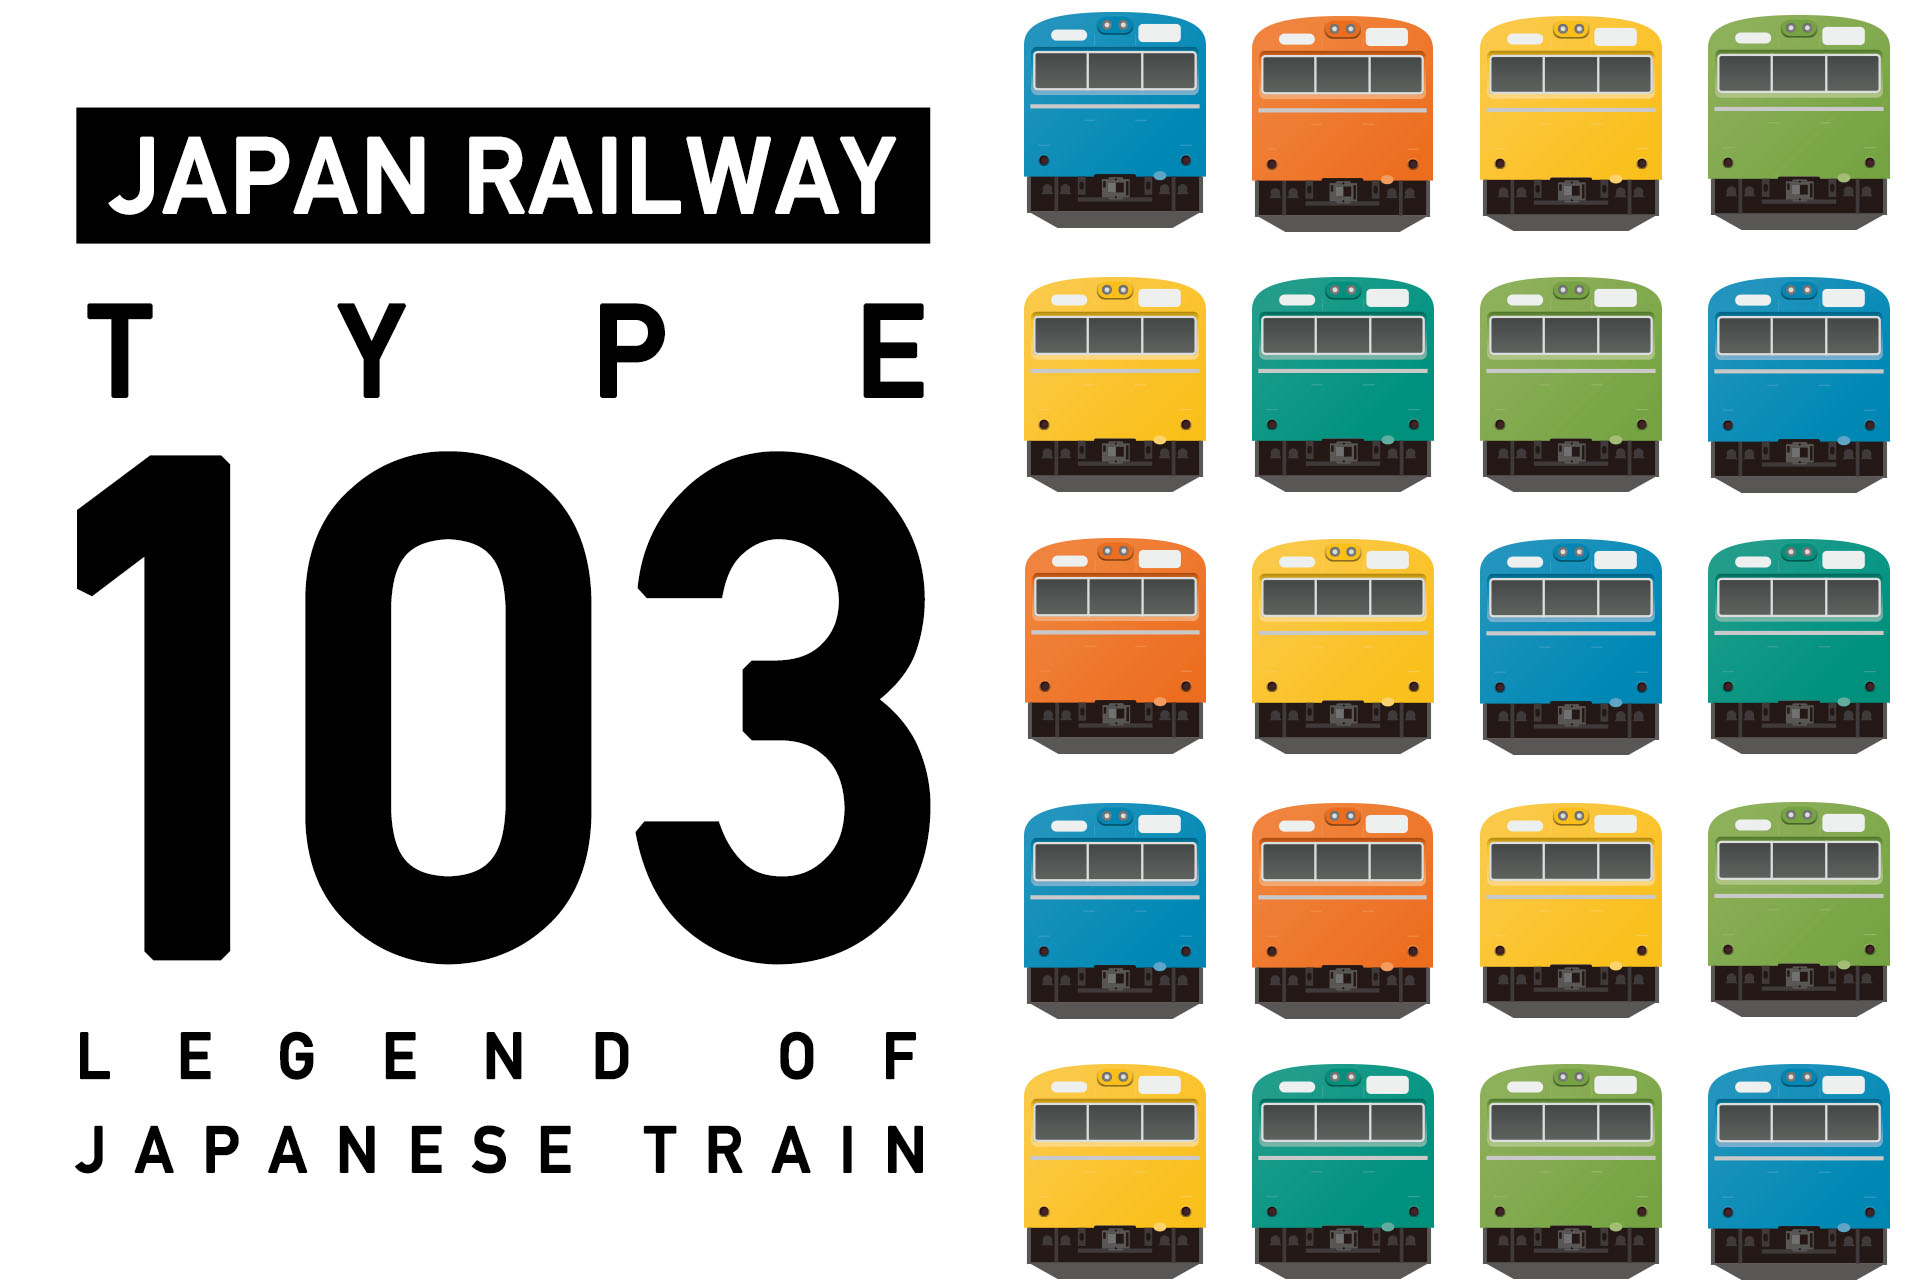 製造数日本一の鉄道車両・103系の今と昔